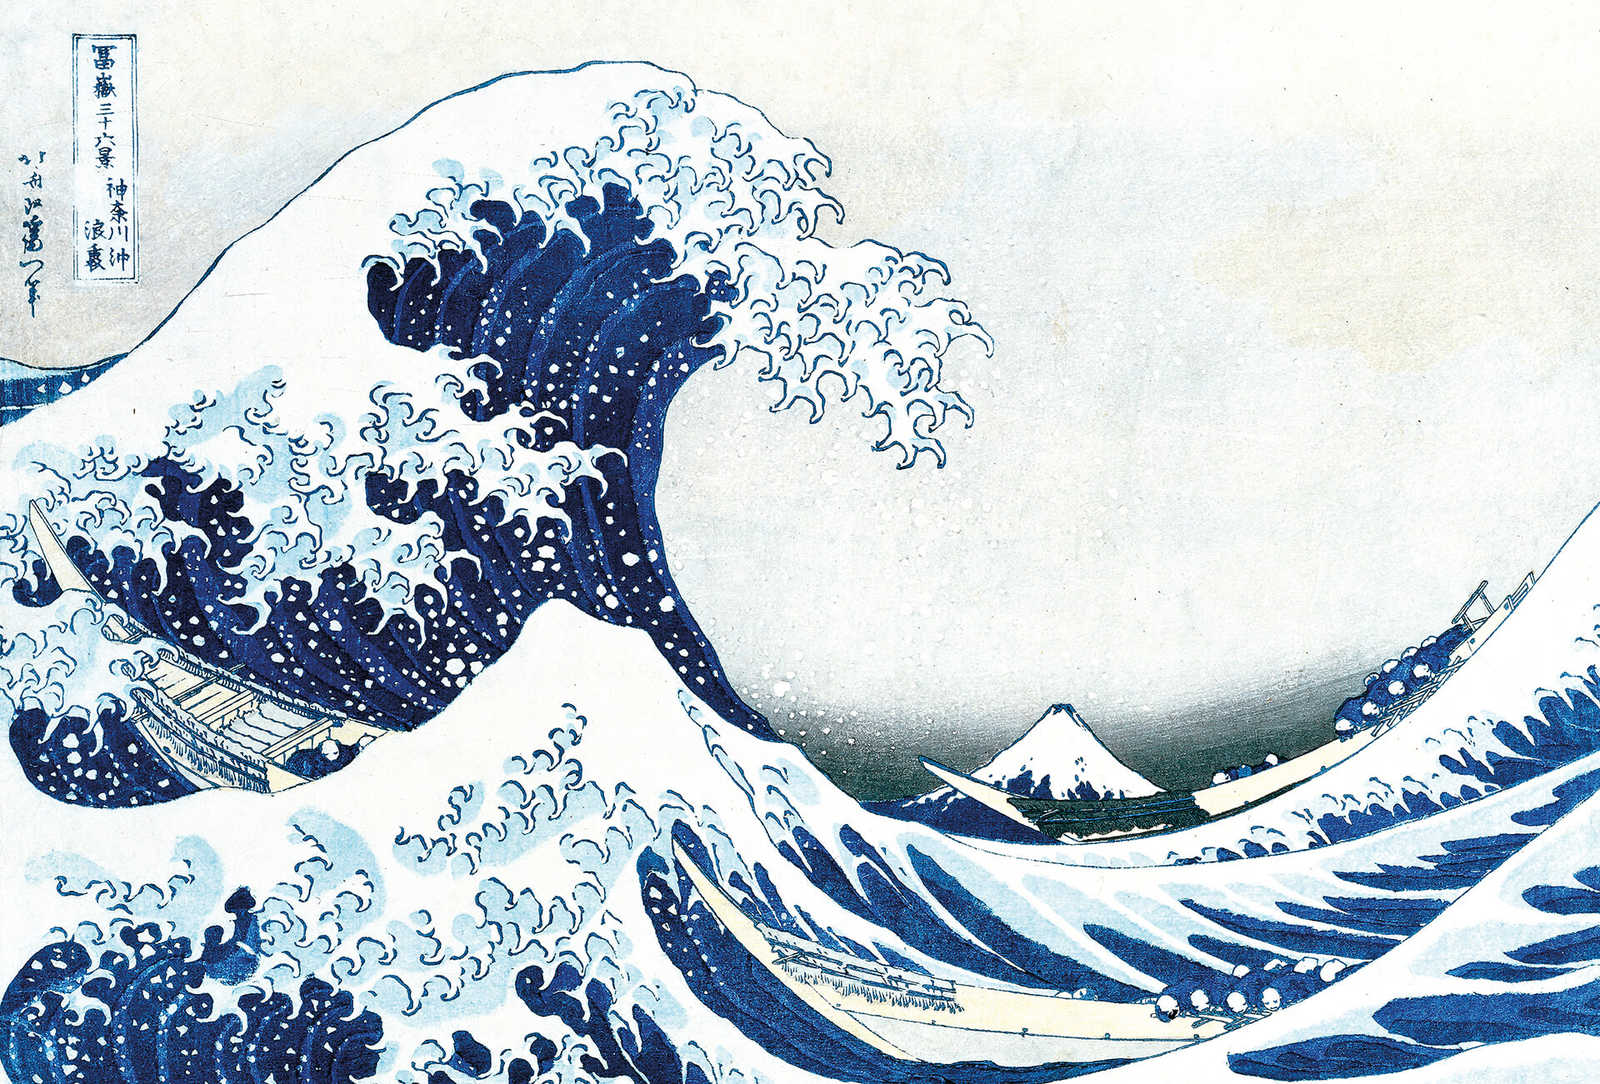         Photo wallpaper drawn wave - Blue
    